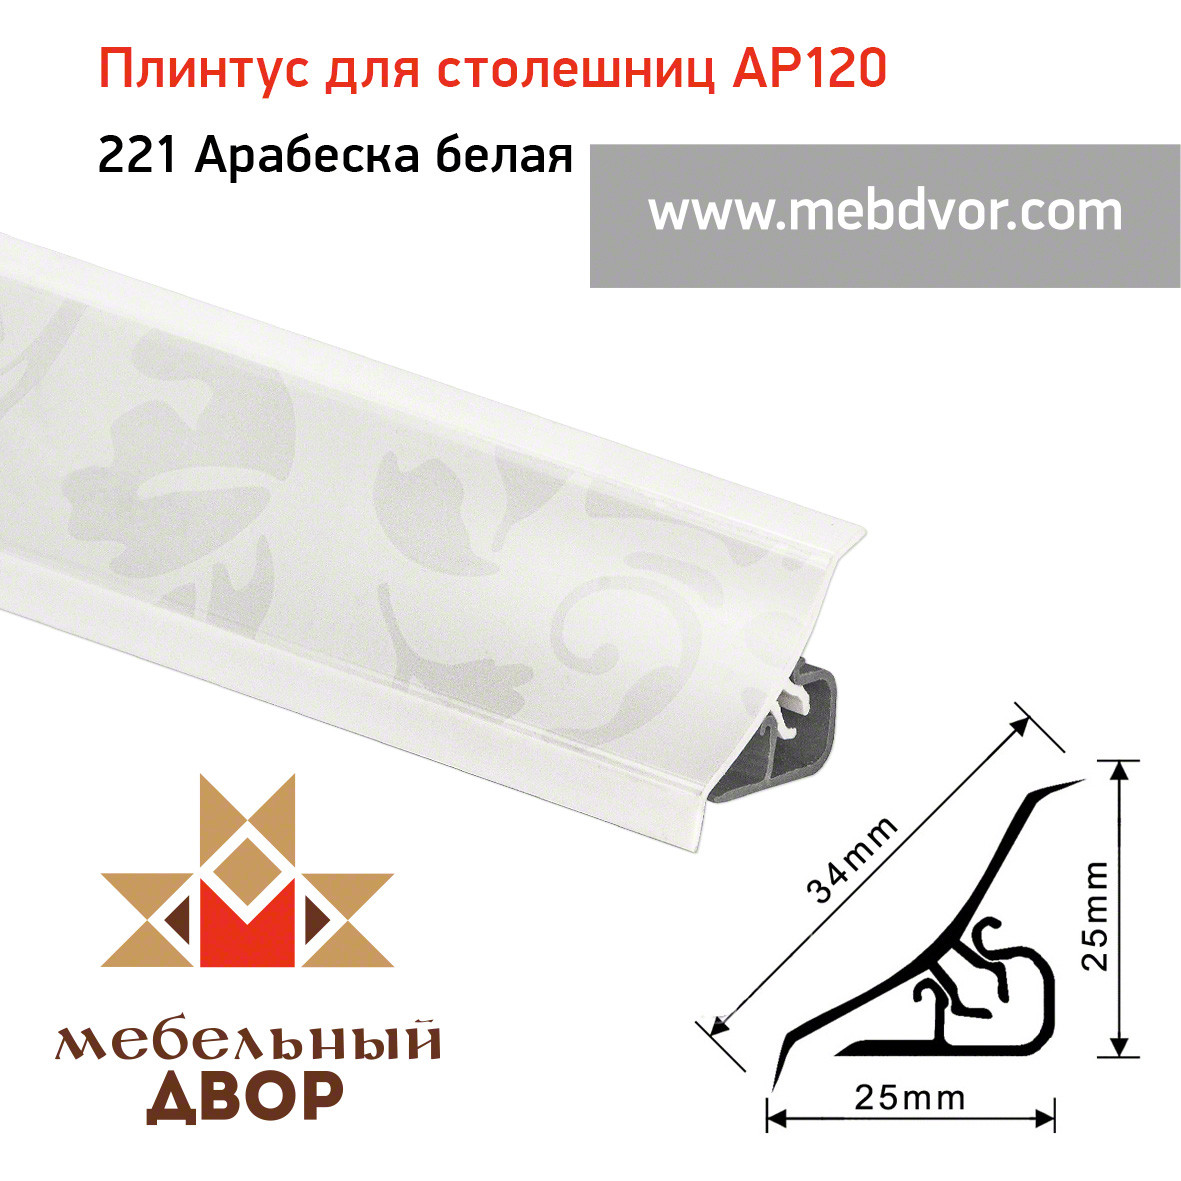 Плинтус для столешниц AP120 (221_Арабеска белая), 3000 mm